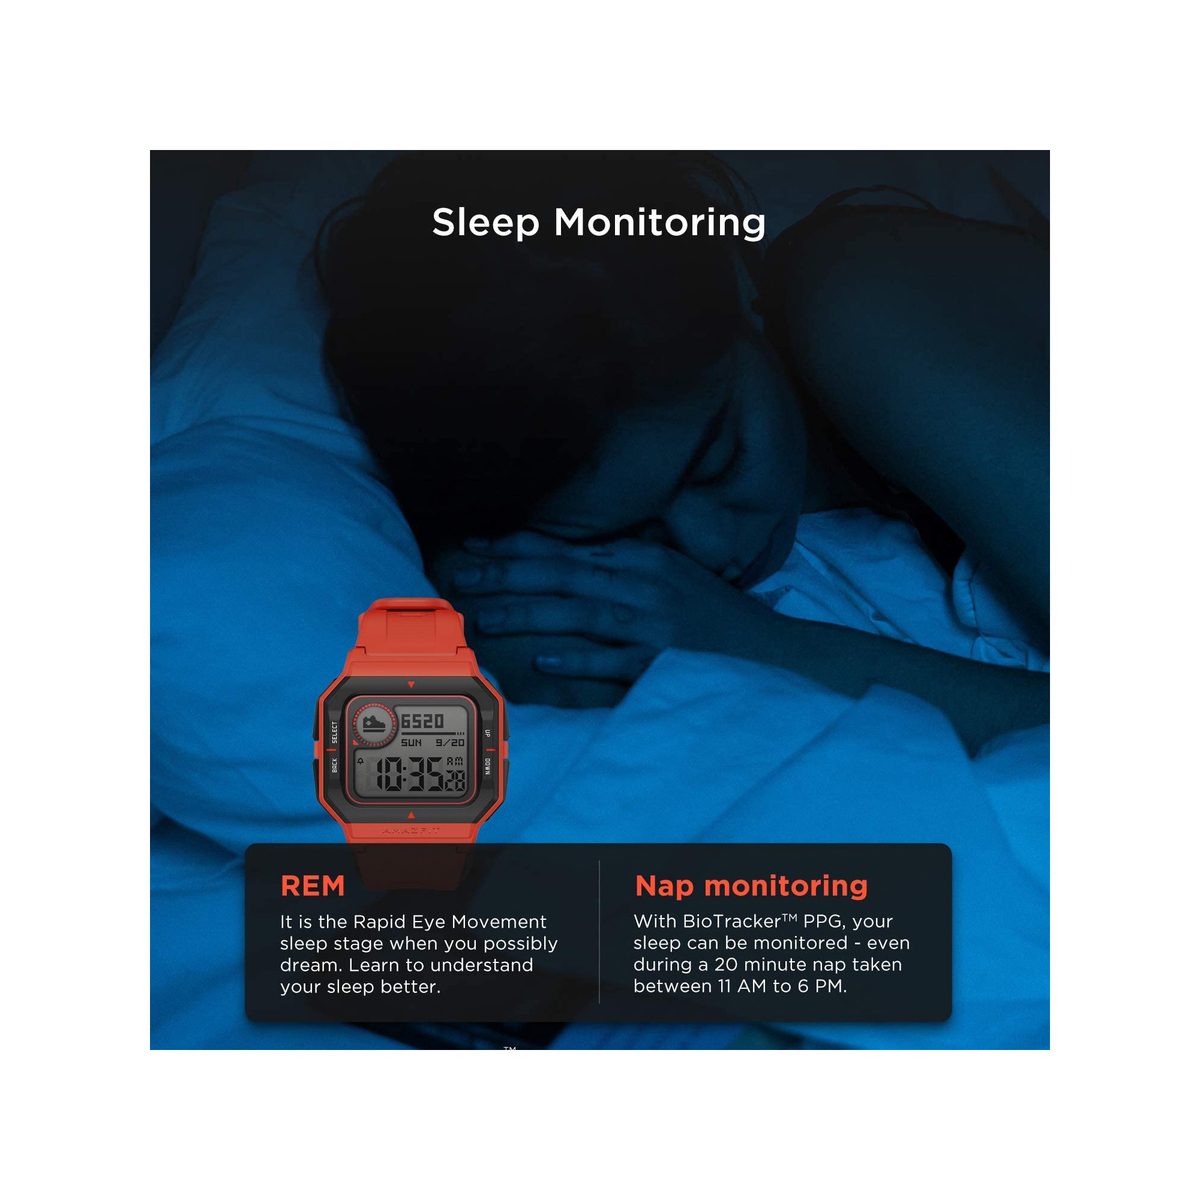 ساعة امازفيت نيو (A2001) الرياضية الذكية مزودة بمراقبة نبضات القلب والنوم - تصميم ريترو - اللون أحمر